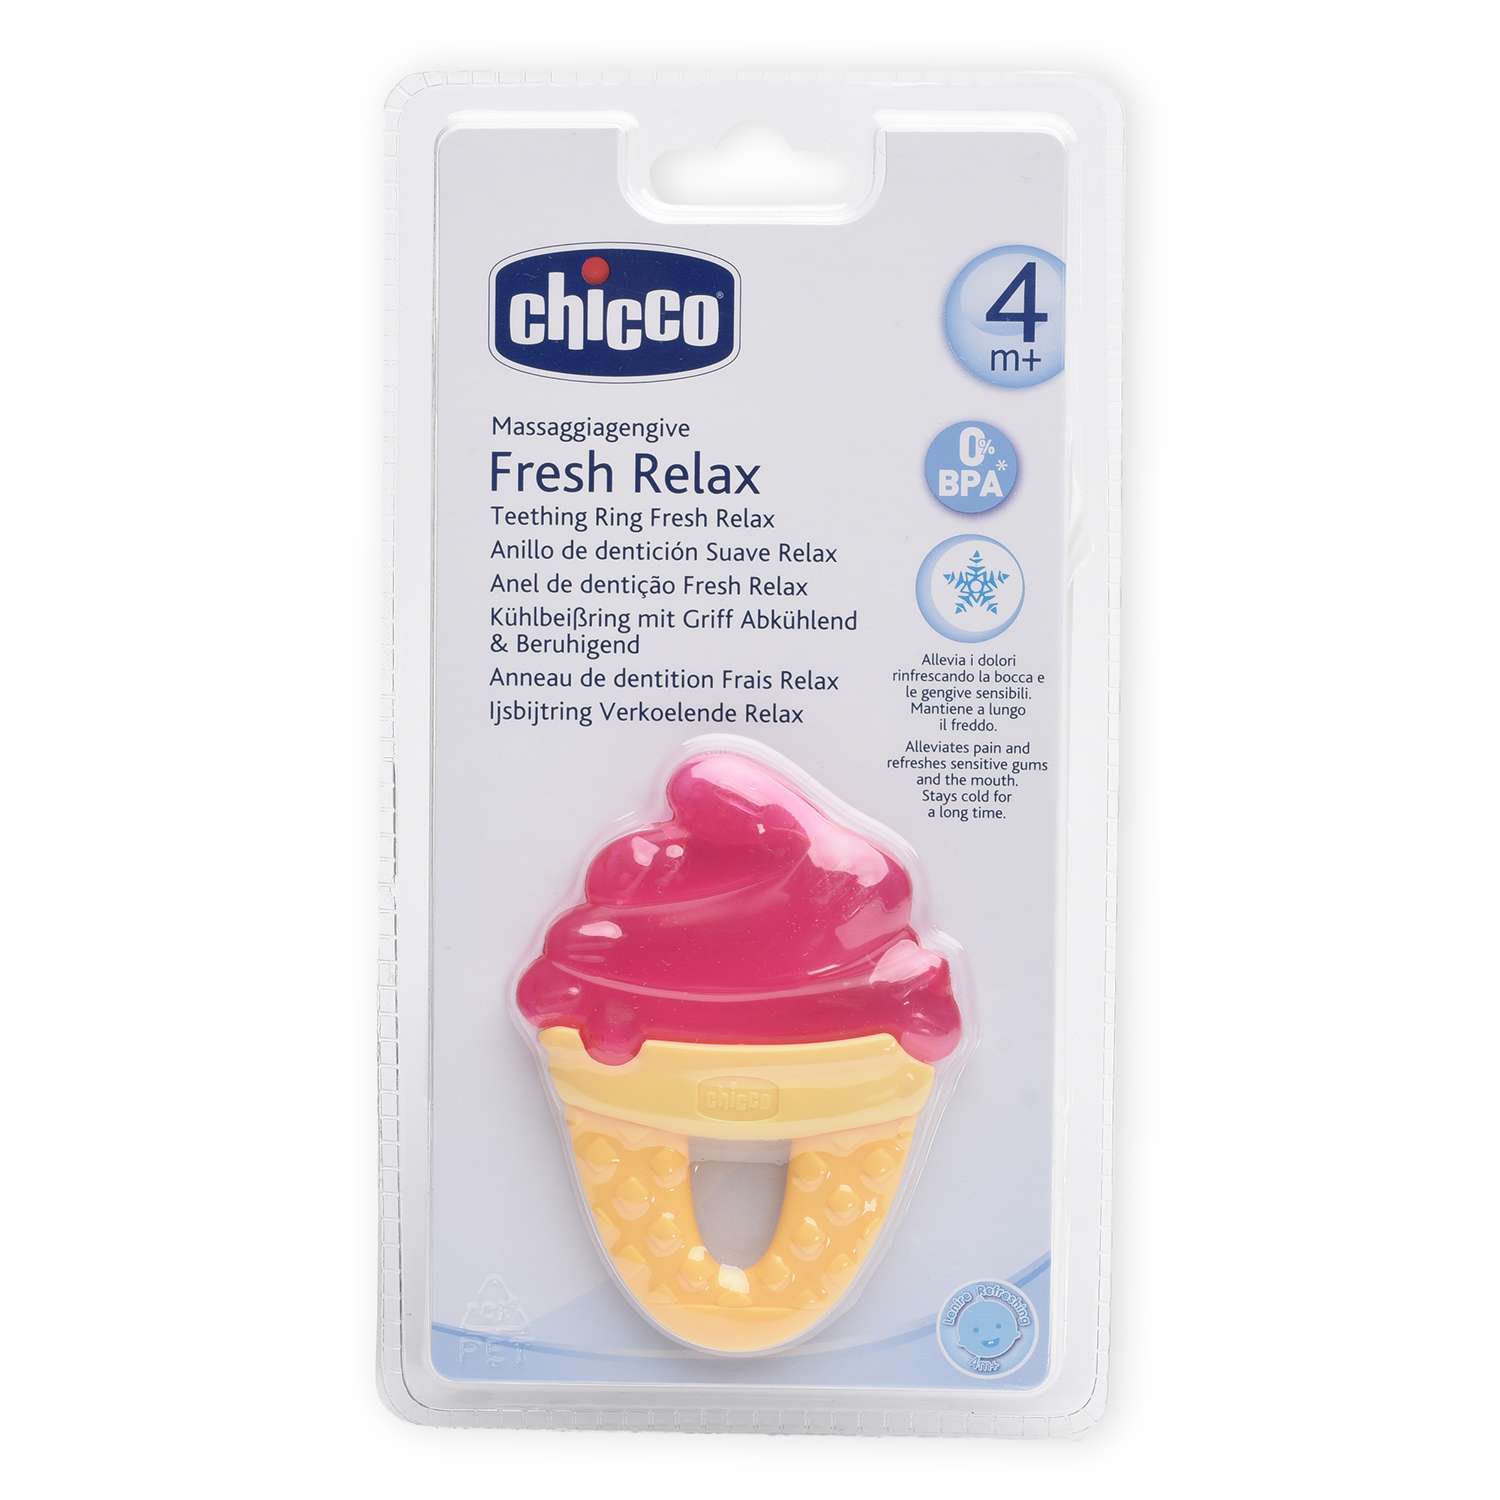 Прорезыватель Chicco игрушка FreshRelax Мороженое кр.4мес. - фото 3